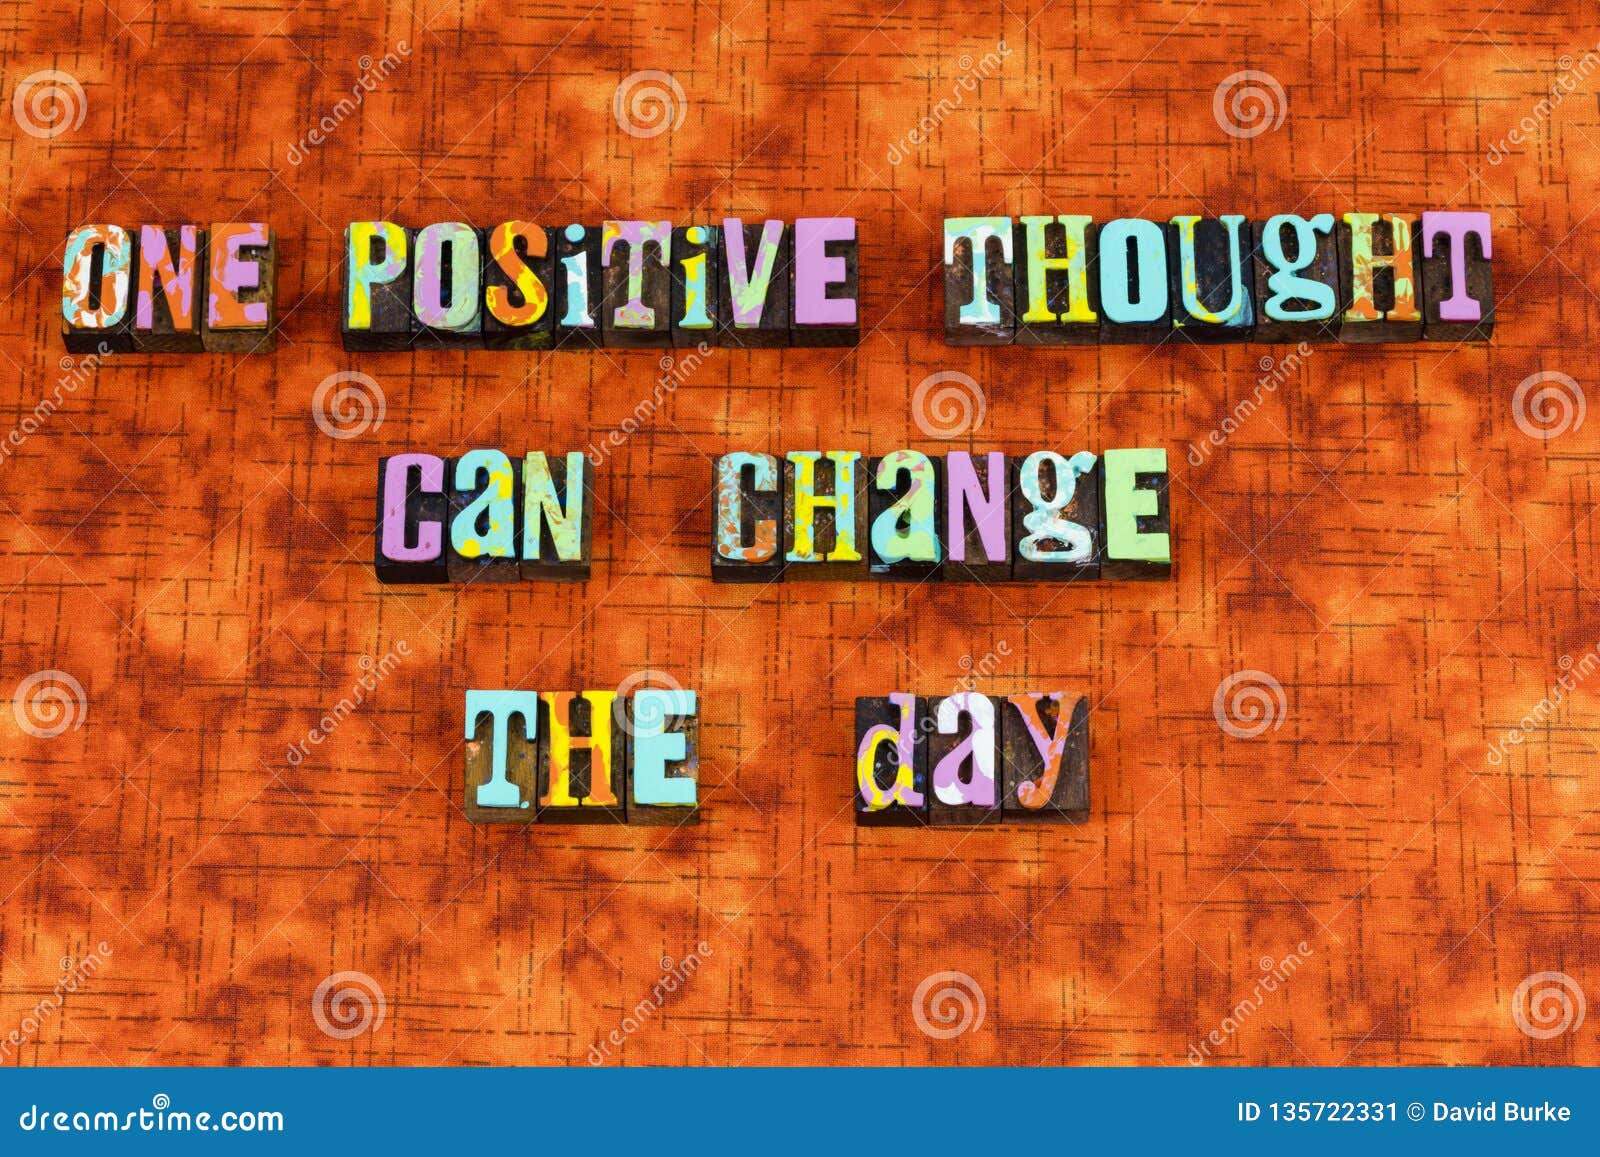 think positive thinking optimism change joy attitude life believe